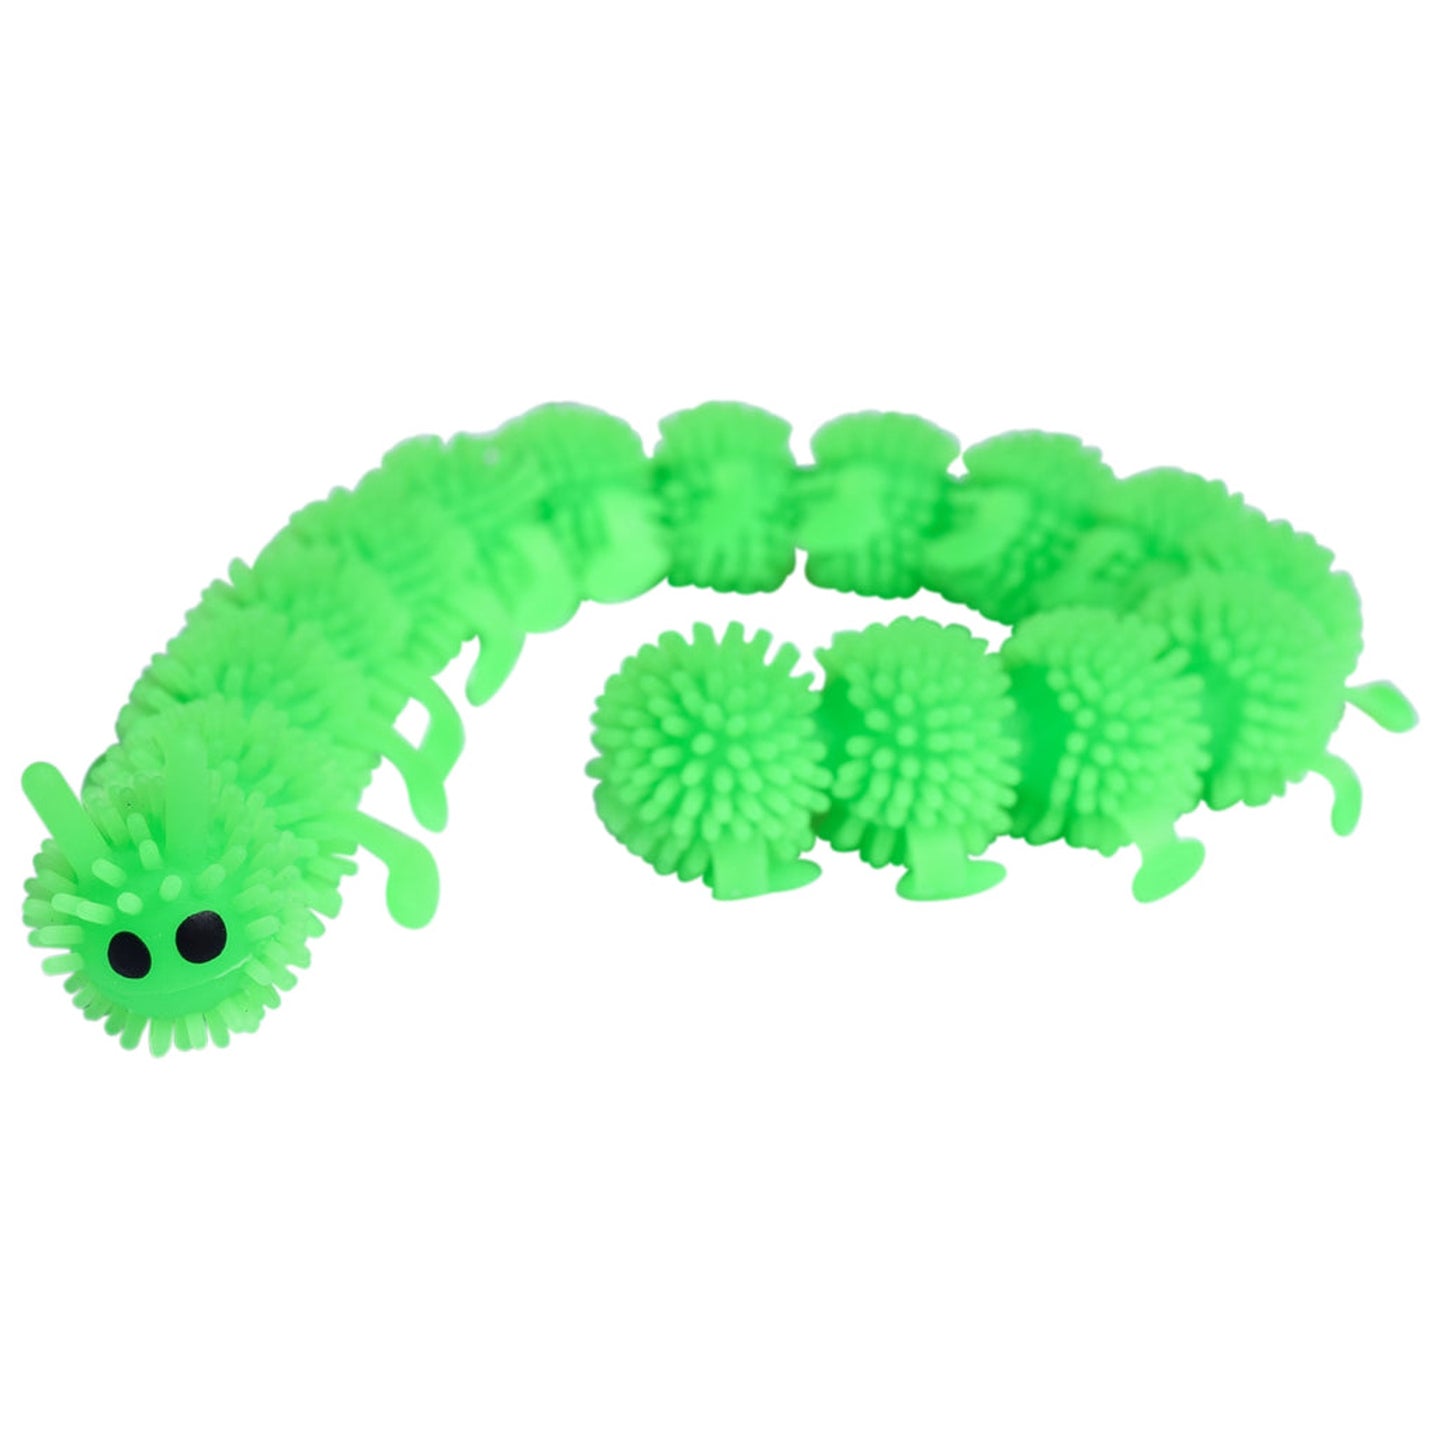 Squishy Caterpillar